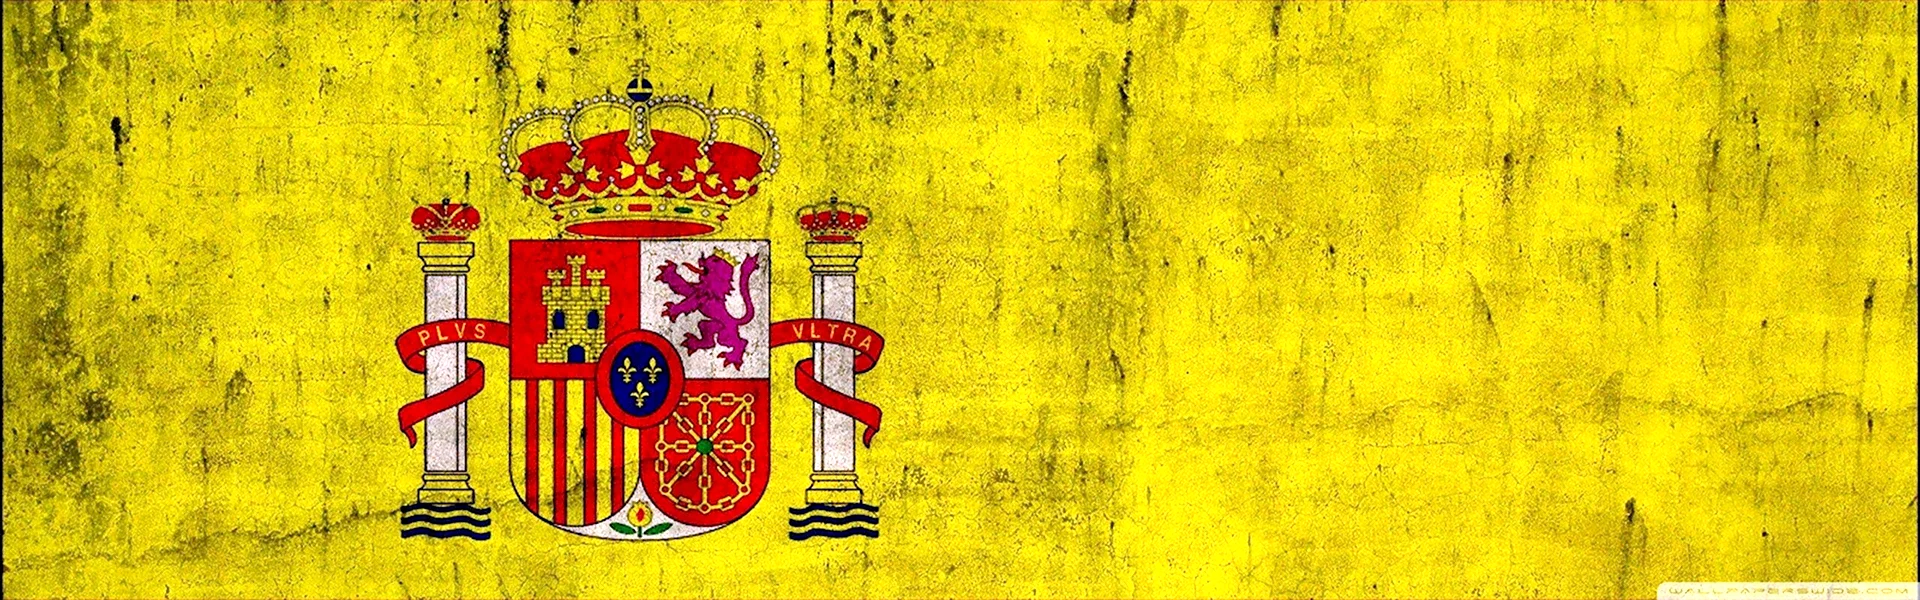 Герб Испании на желтом фоне